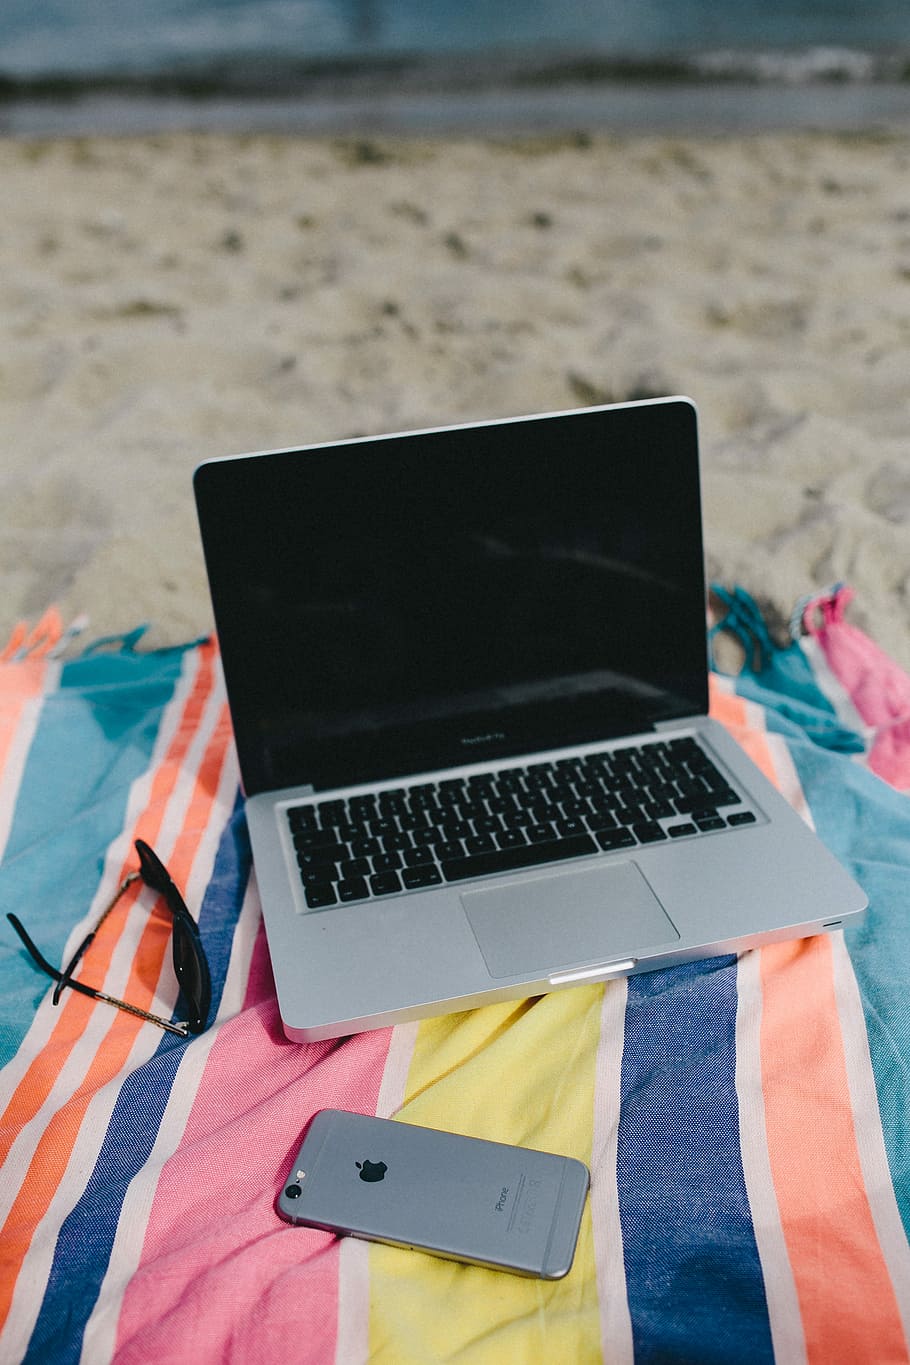 bersama-sama, pantai, pasir, musim panas, komputer, macbook, laptop, selimut, liburan, laut